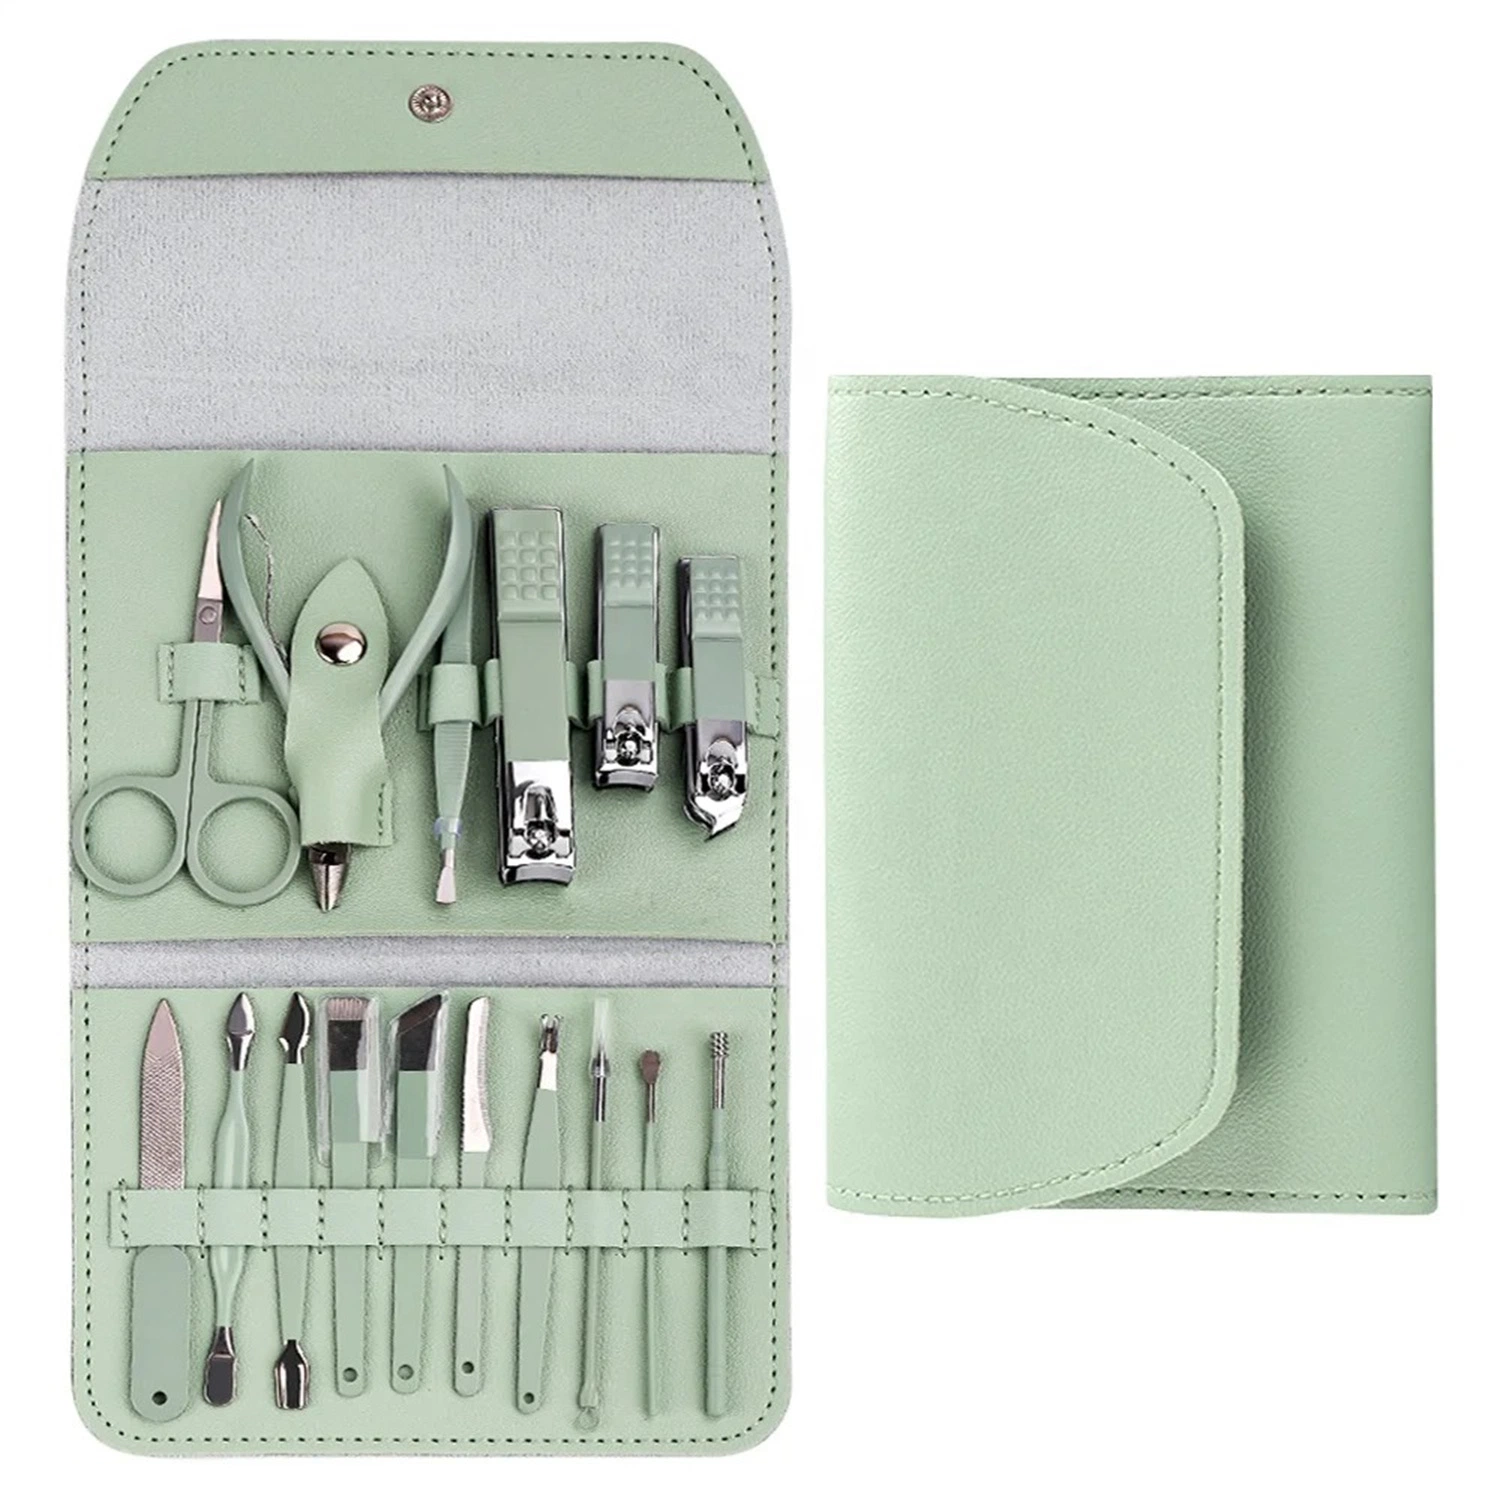 Набор инструментов для ногтей набор ногтей набор ногтей, 16 ШТ./набор ножниц для ногтей, ножниц для ногтей, педикюра и набор для ногтей